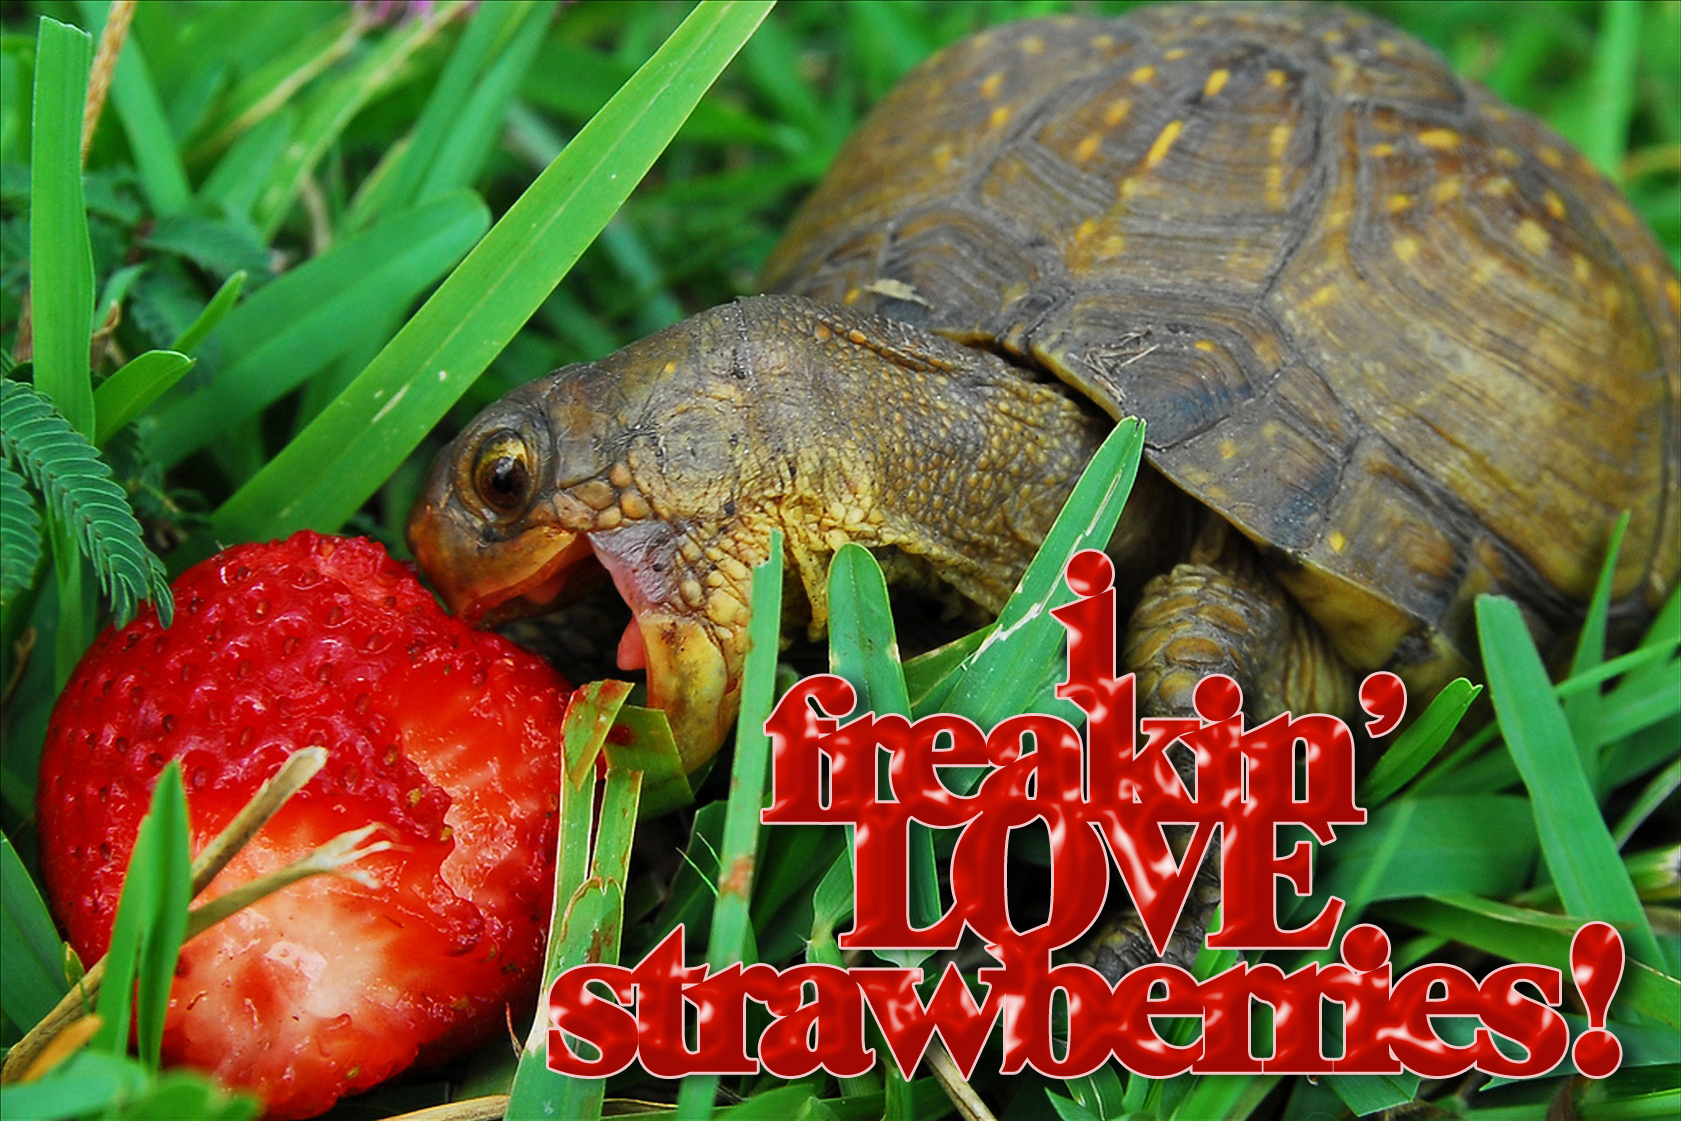 turtle-loves-strawberries.jpg